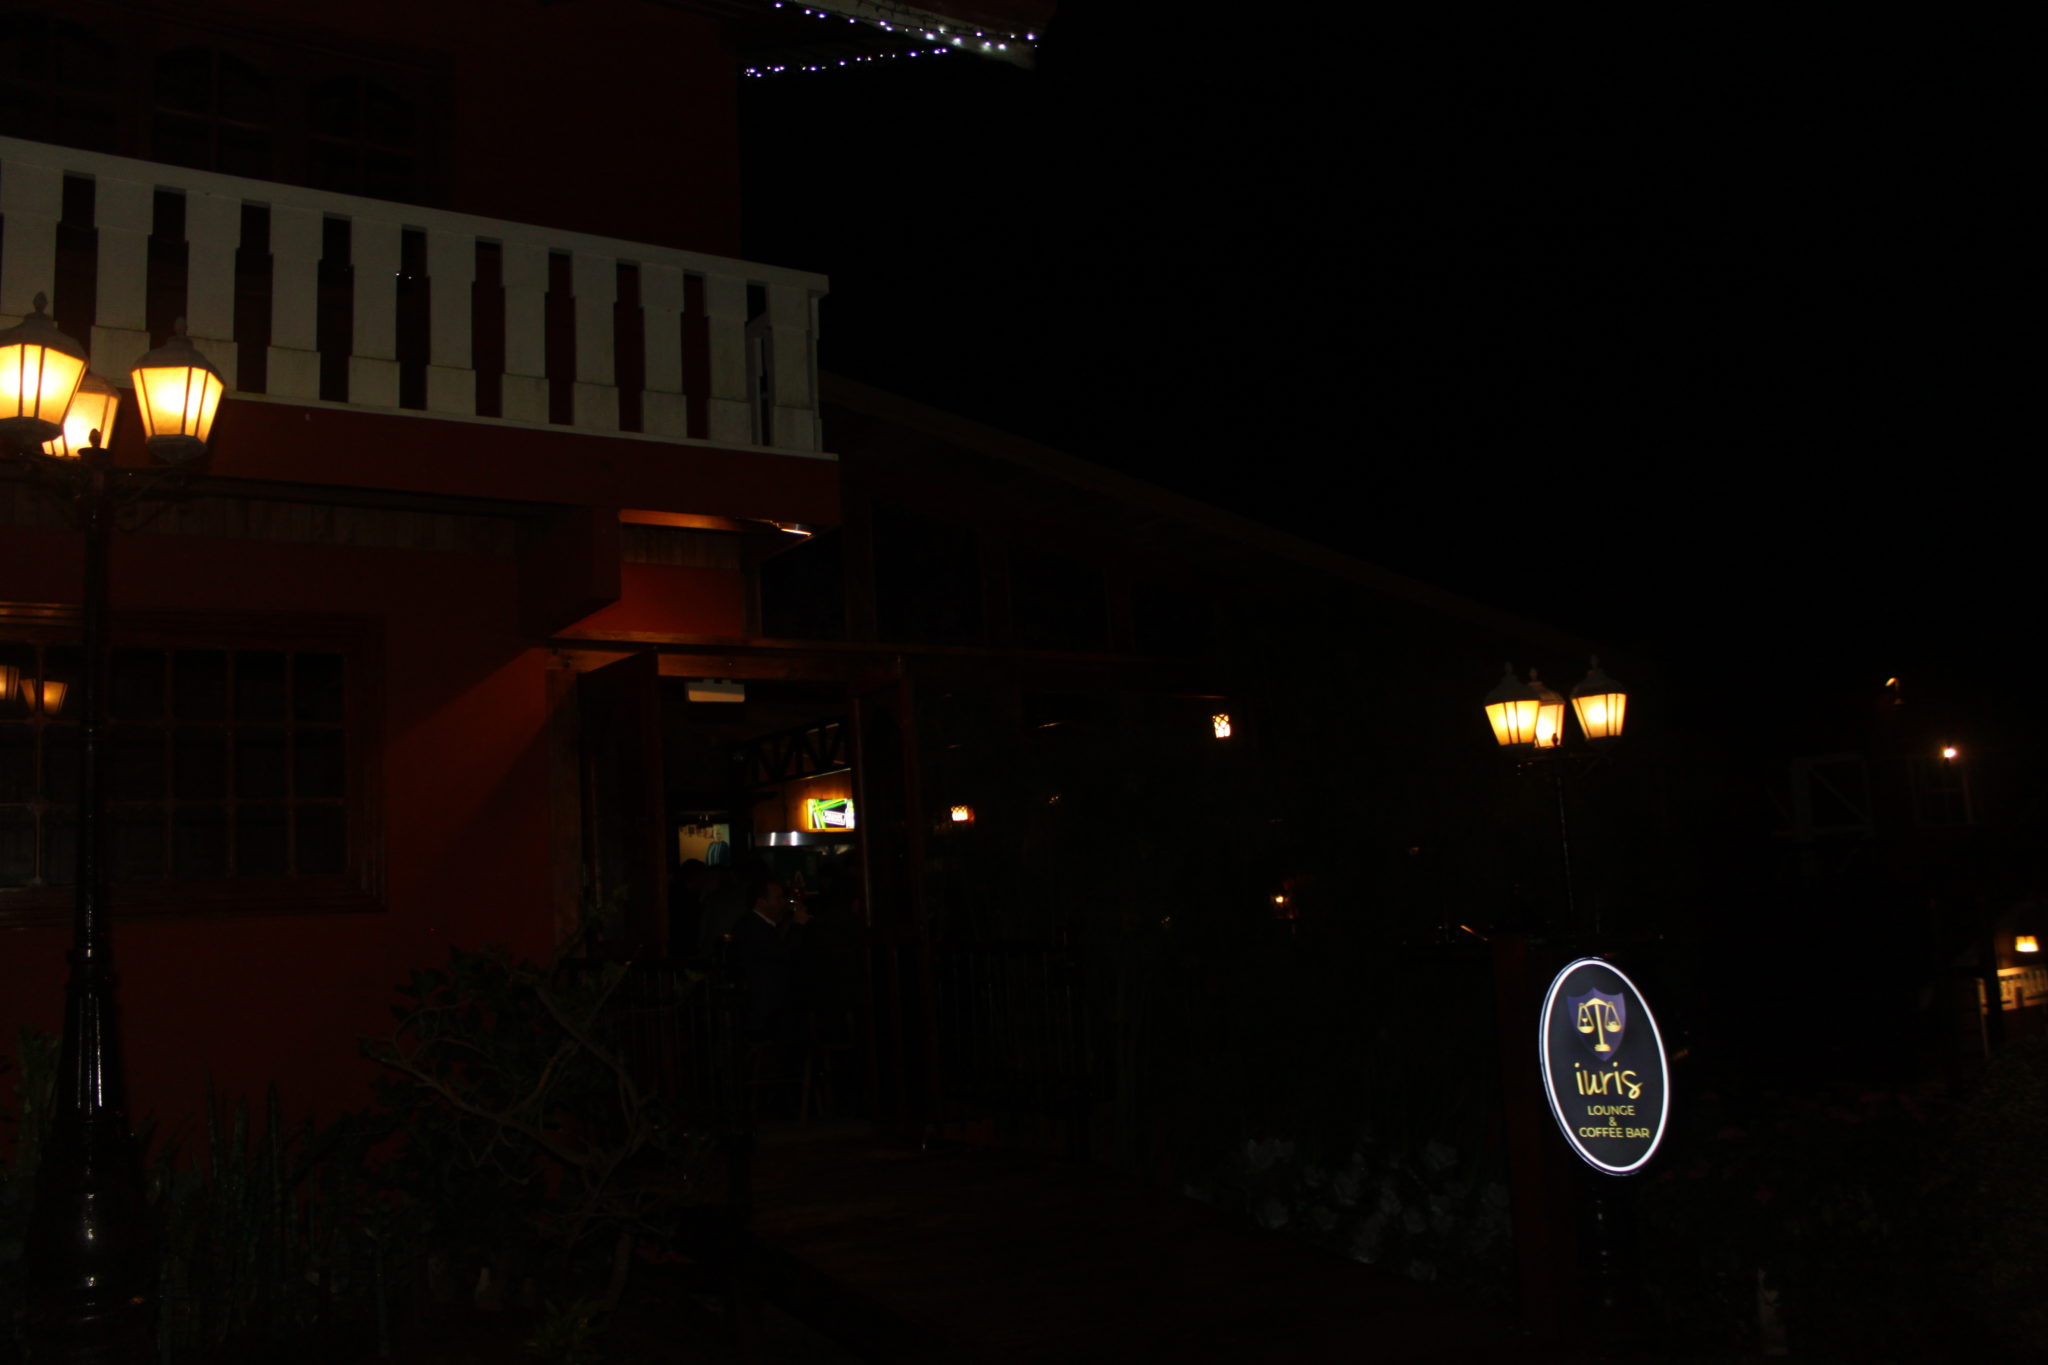 Iuris Lounge & Coffe Bar La Cava del Duende en Coronado Costa Rica